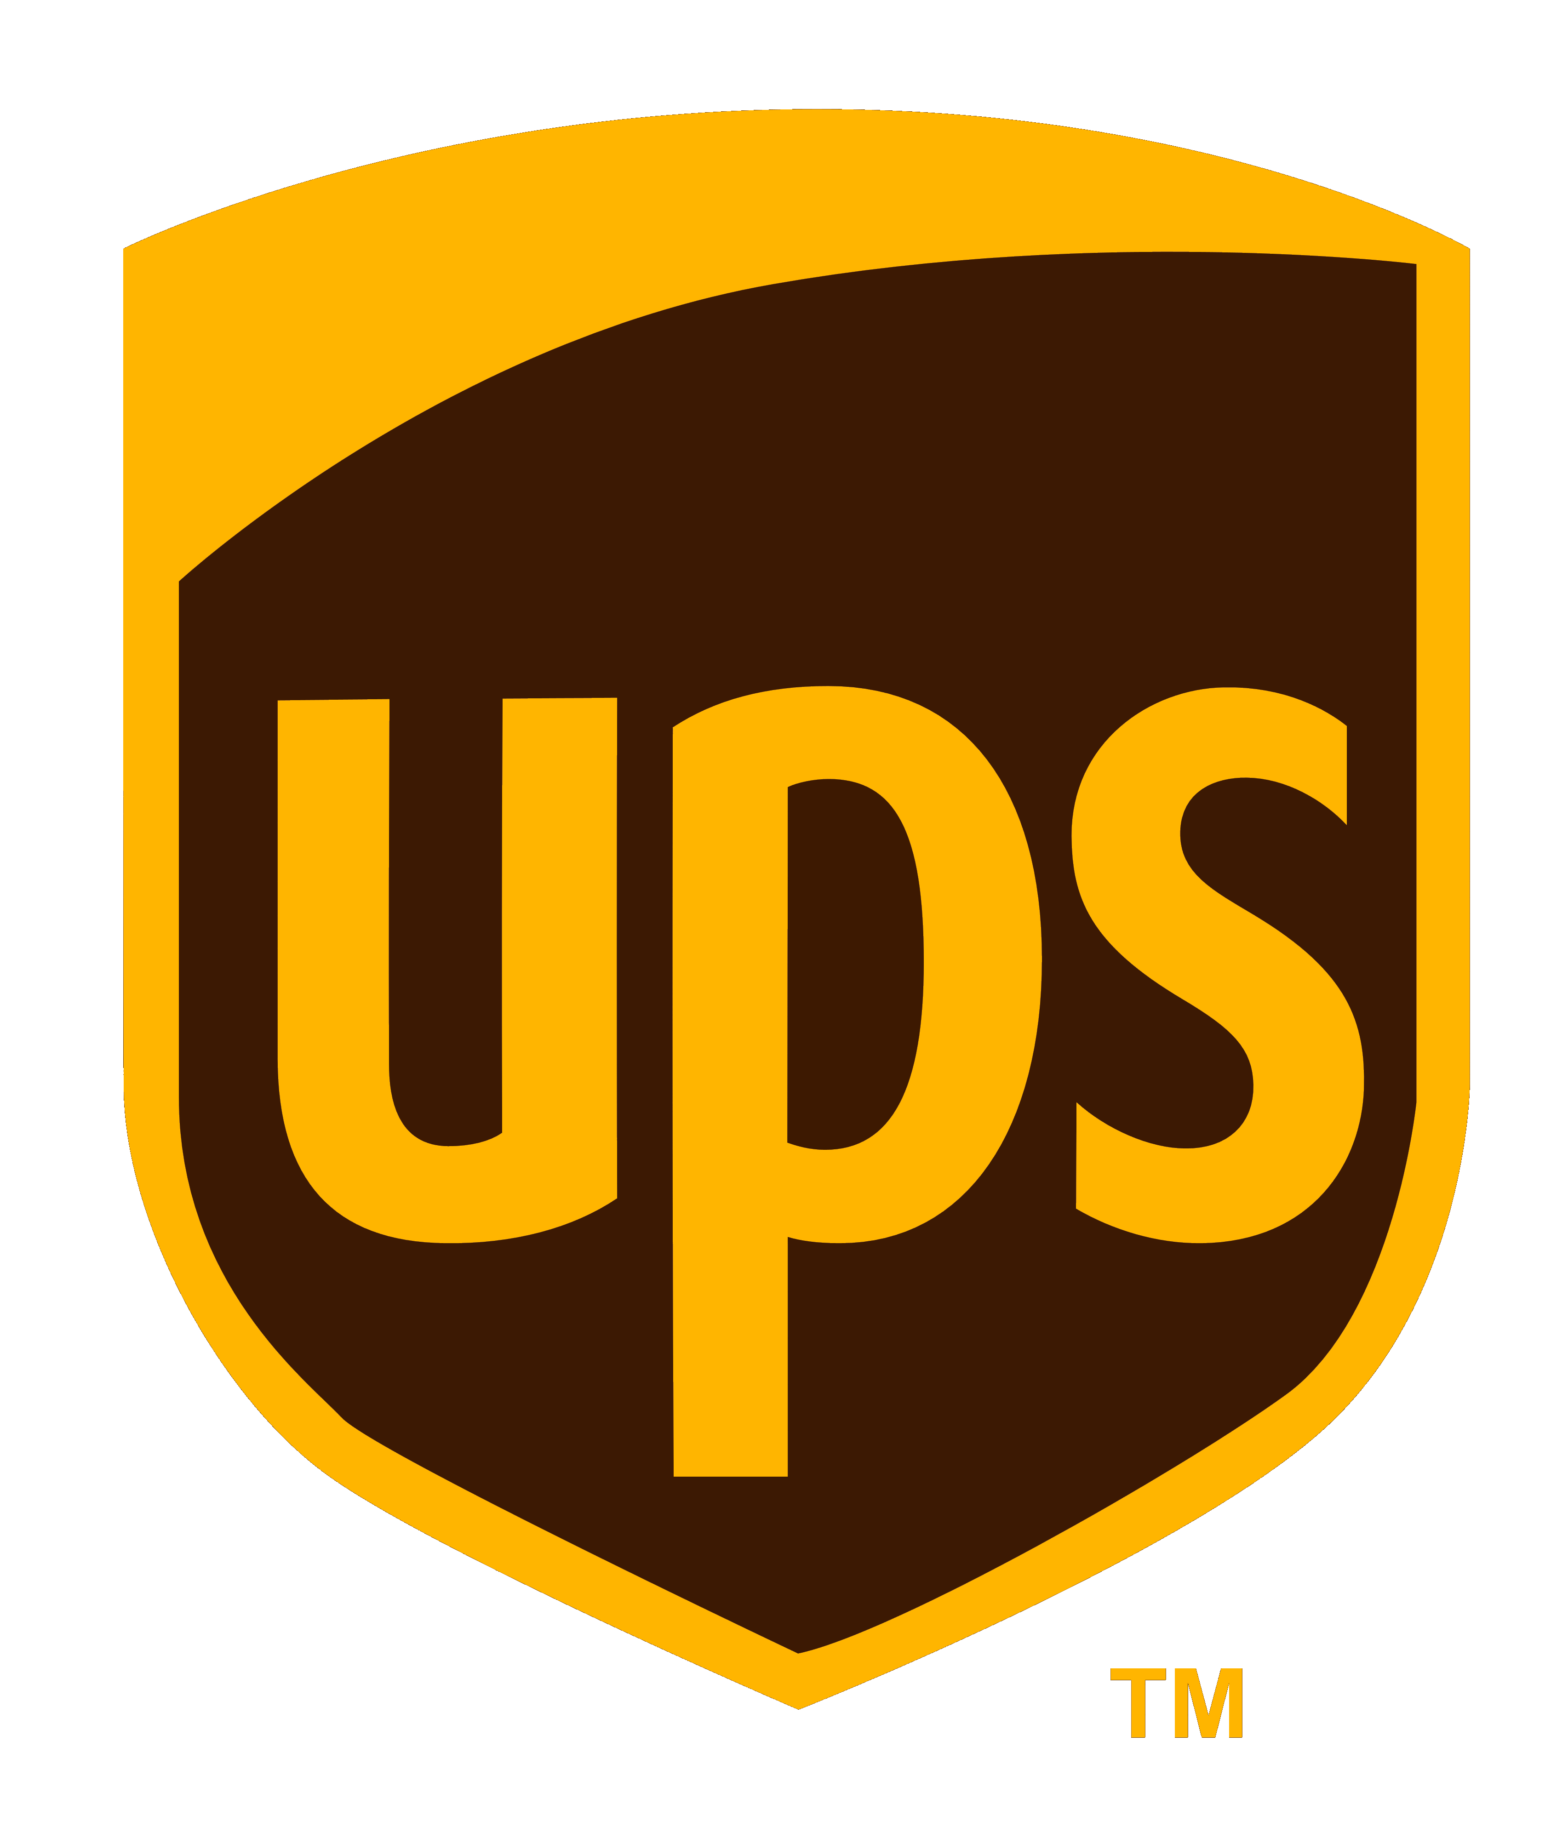 Logo of UPS